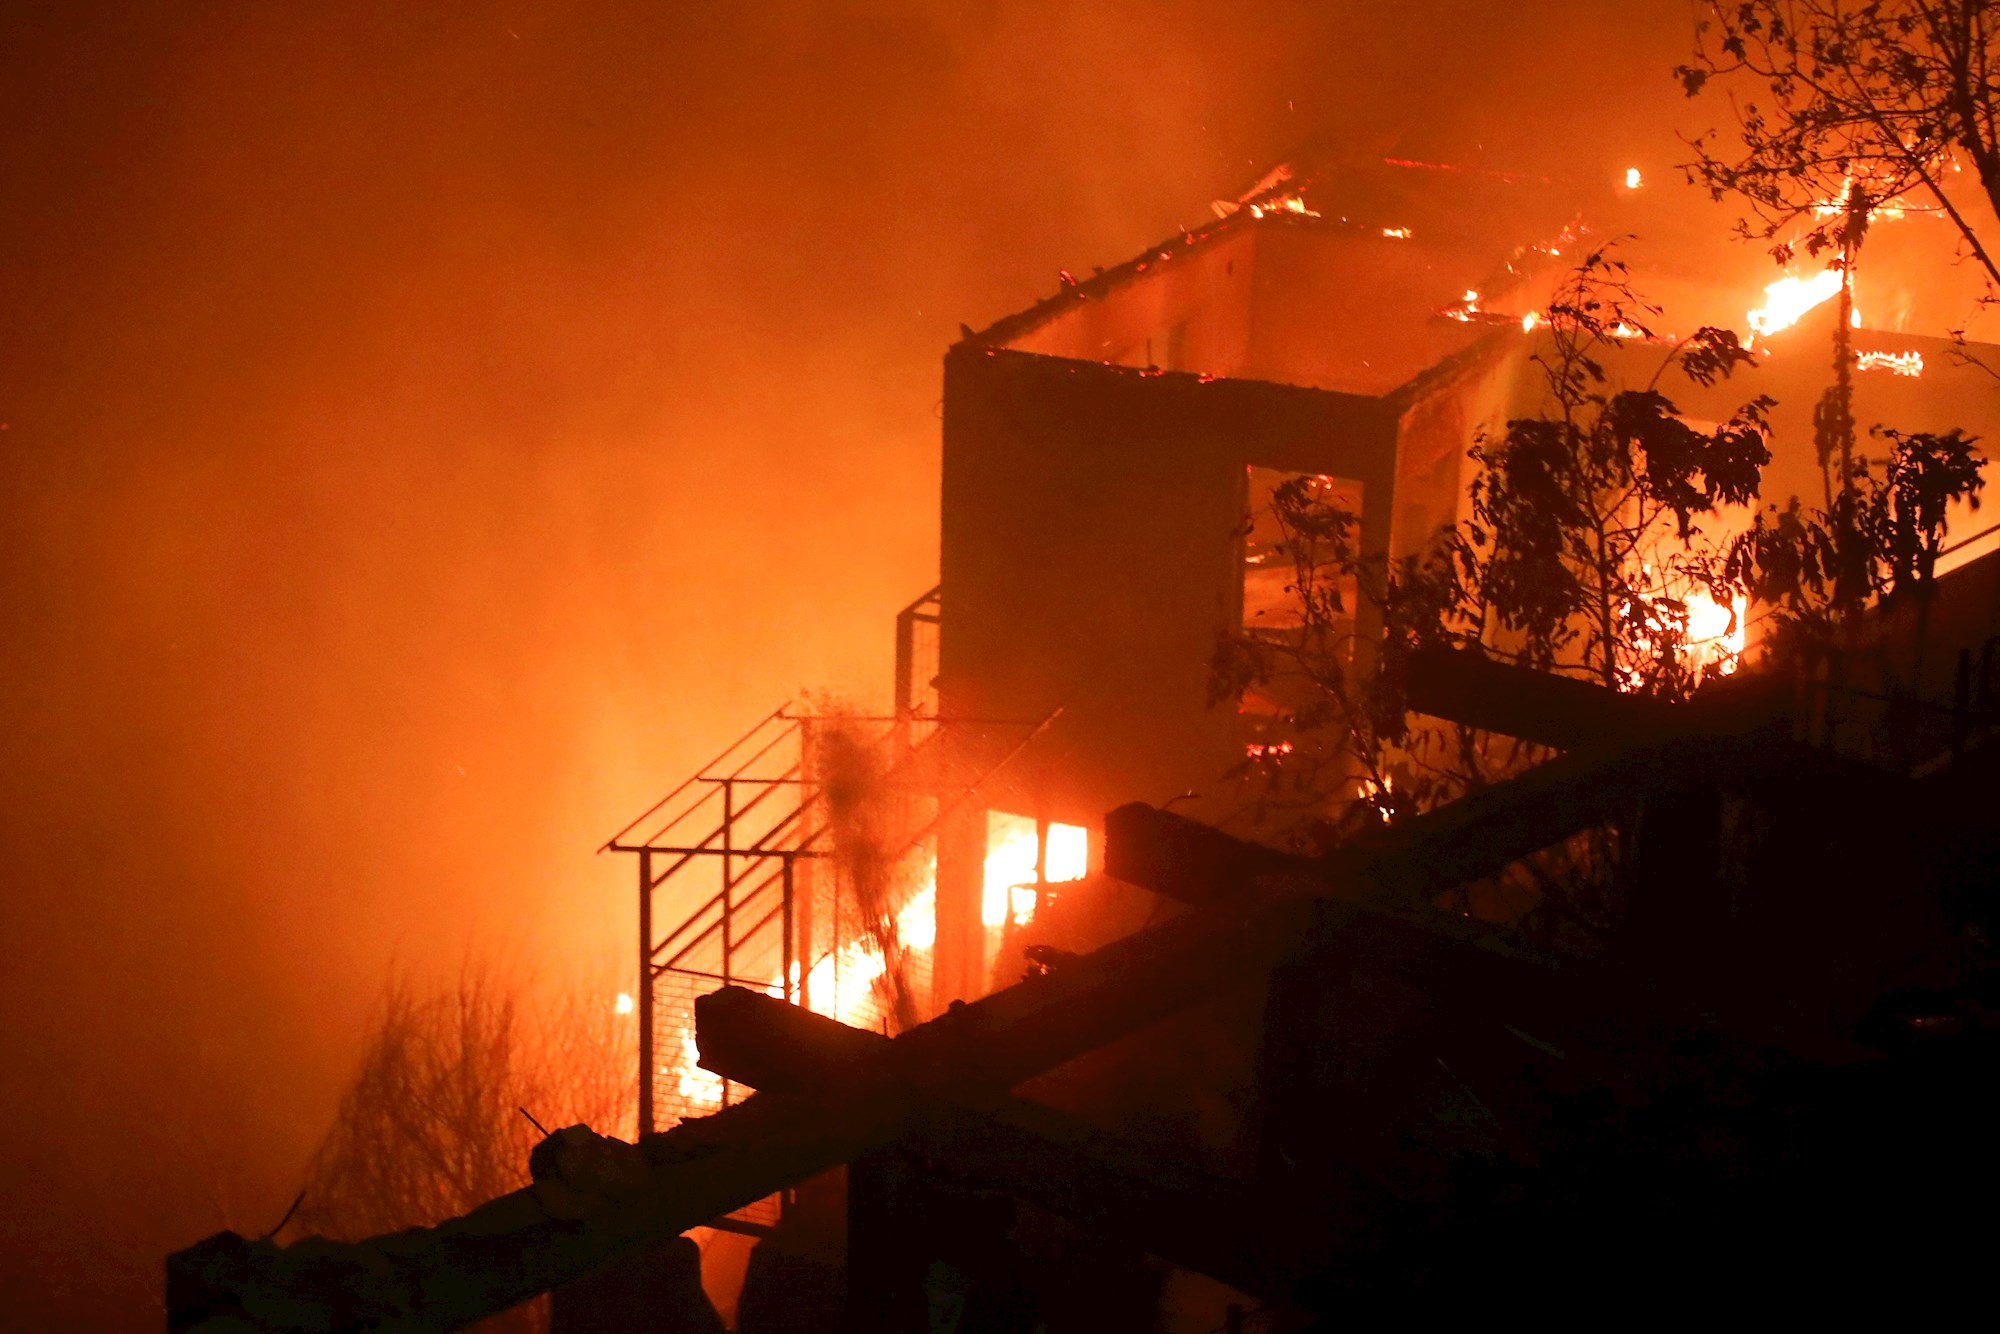 El fuego asalta a los vecinos de la chilena Valparaíso en plena Nochebuena